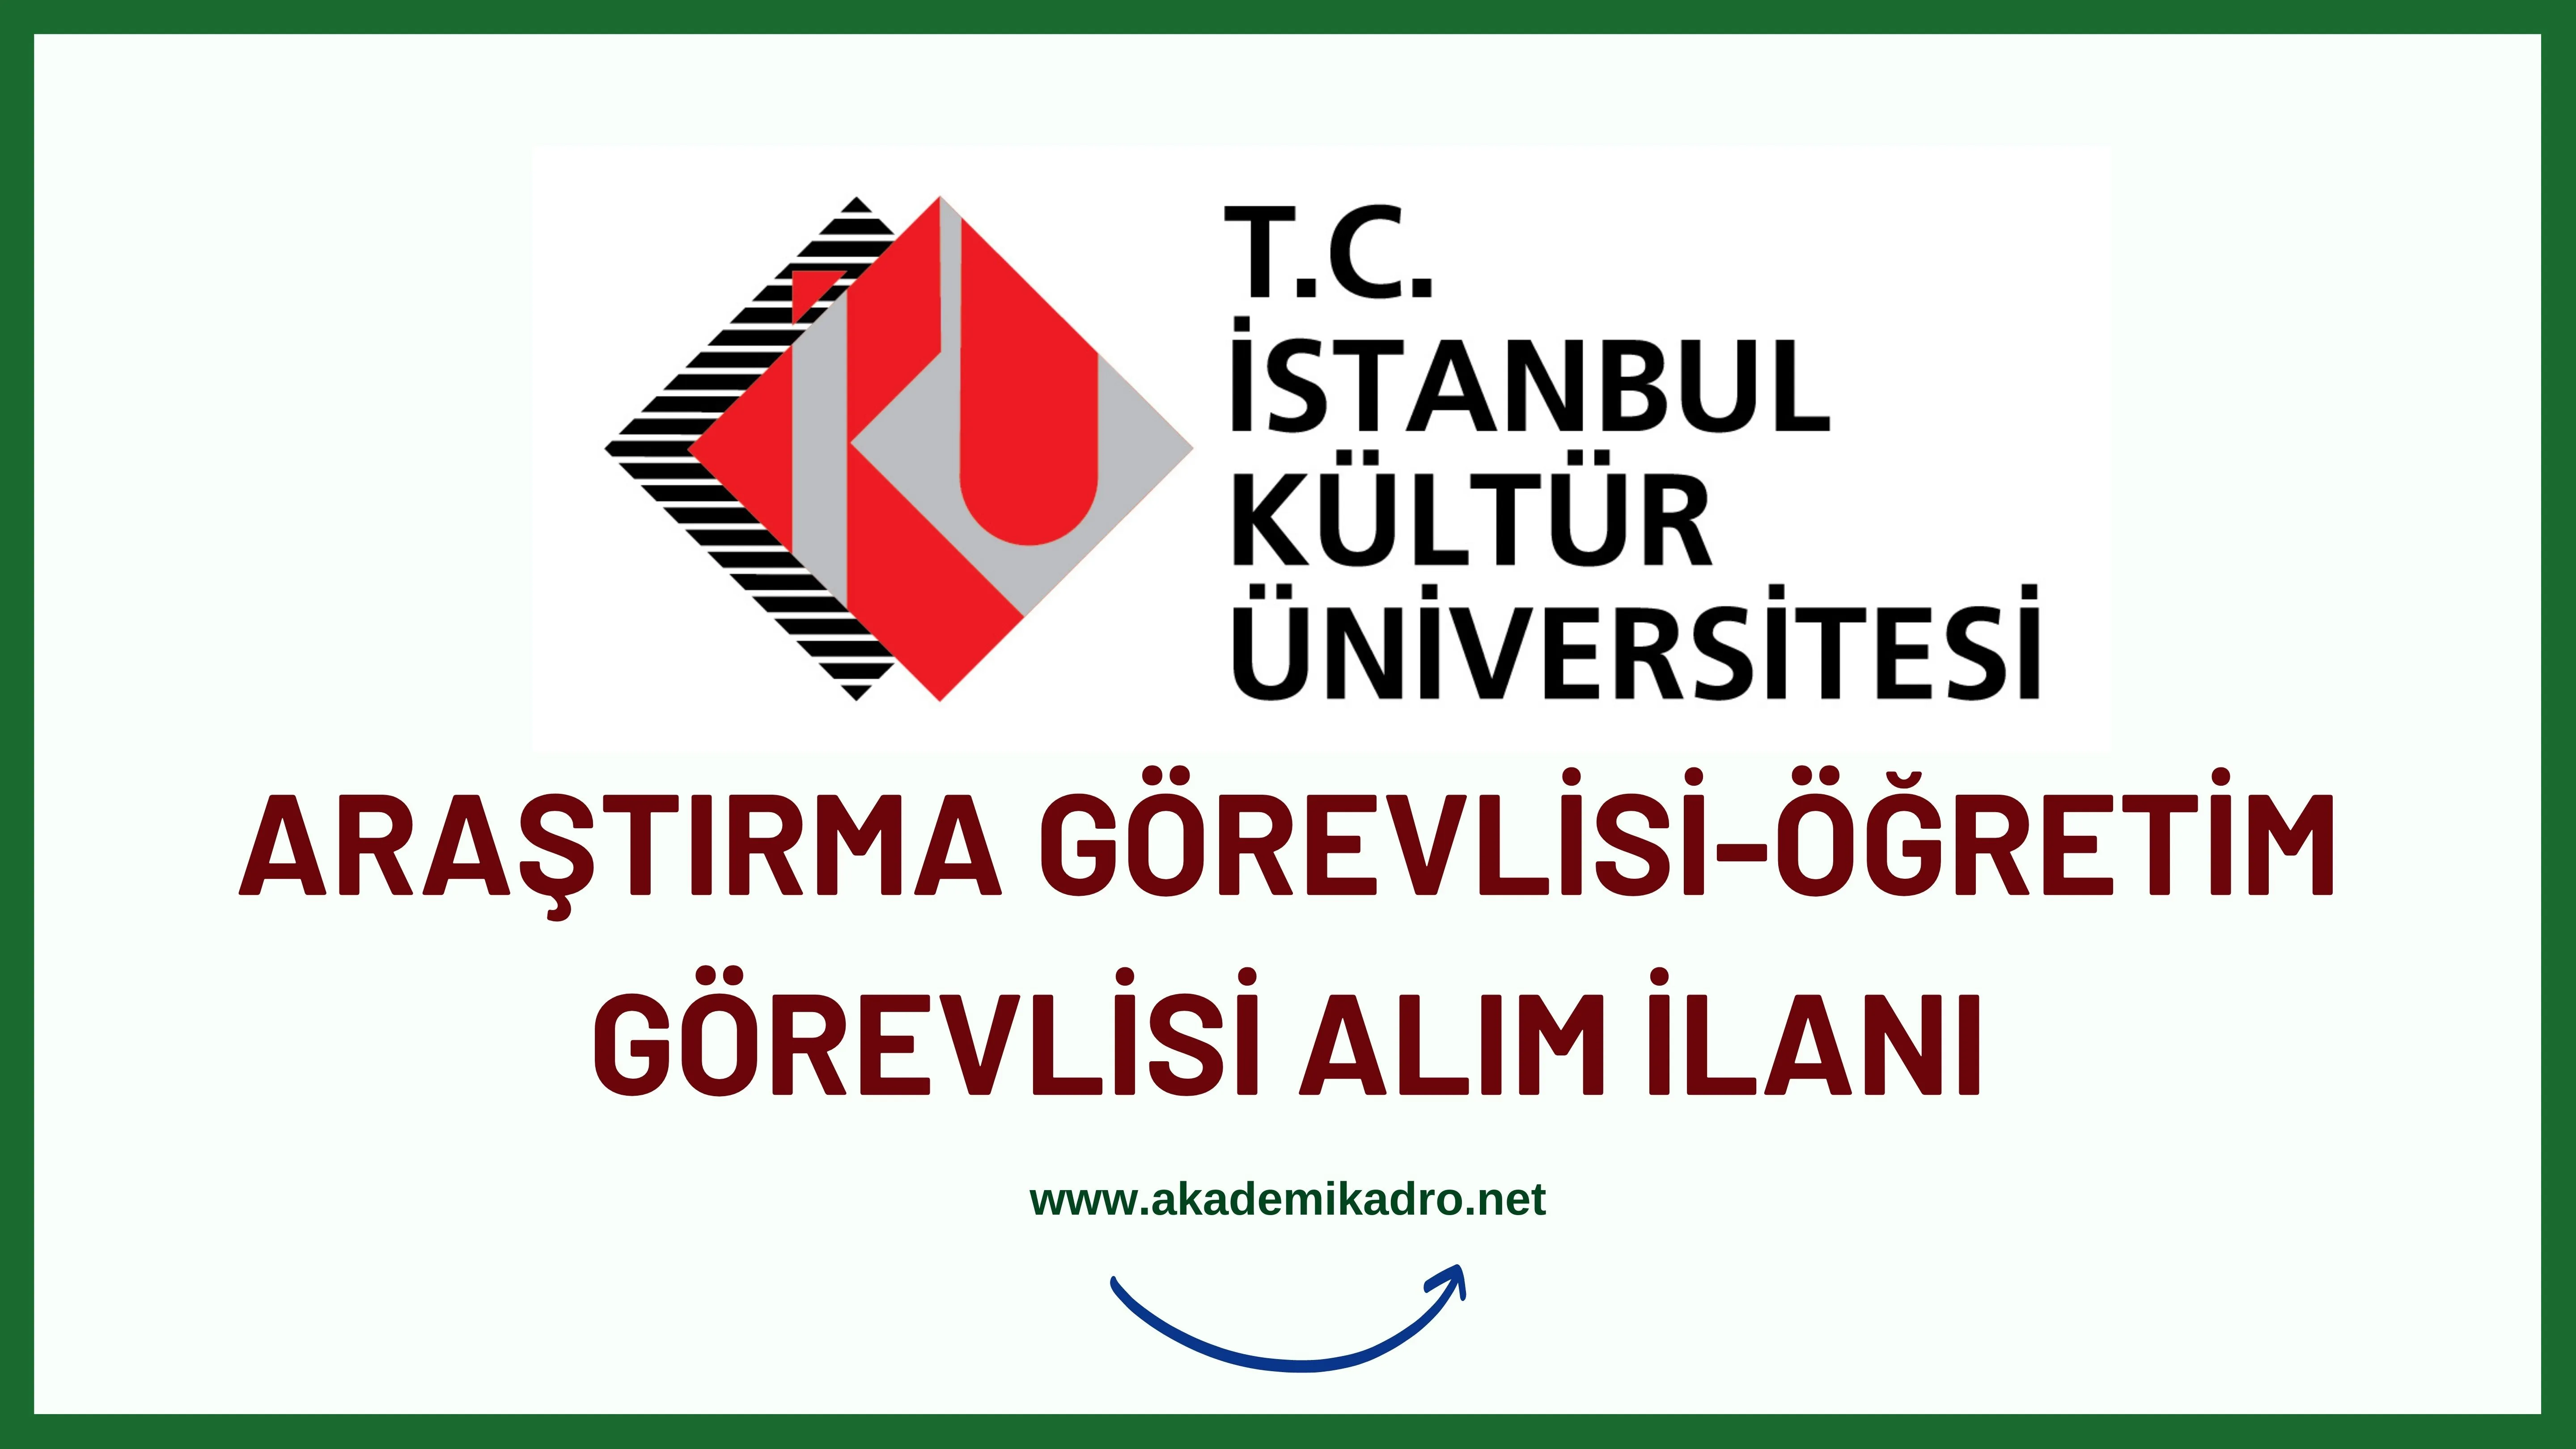 İstanbul Kültür Üniversitesi Araştırma görevlisi, öğretim görevlisi ve öğretim üyesi olmak üzere 12 Öğretim elemanı alacak.